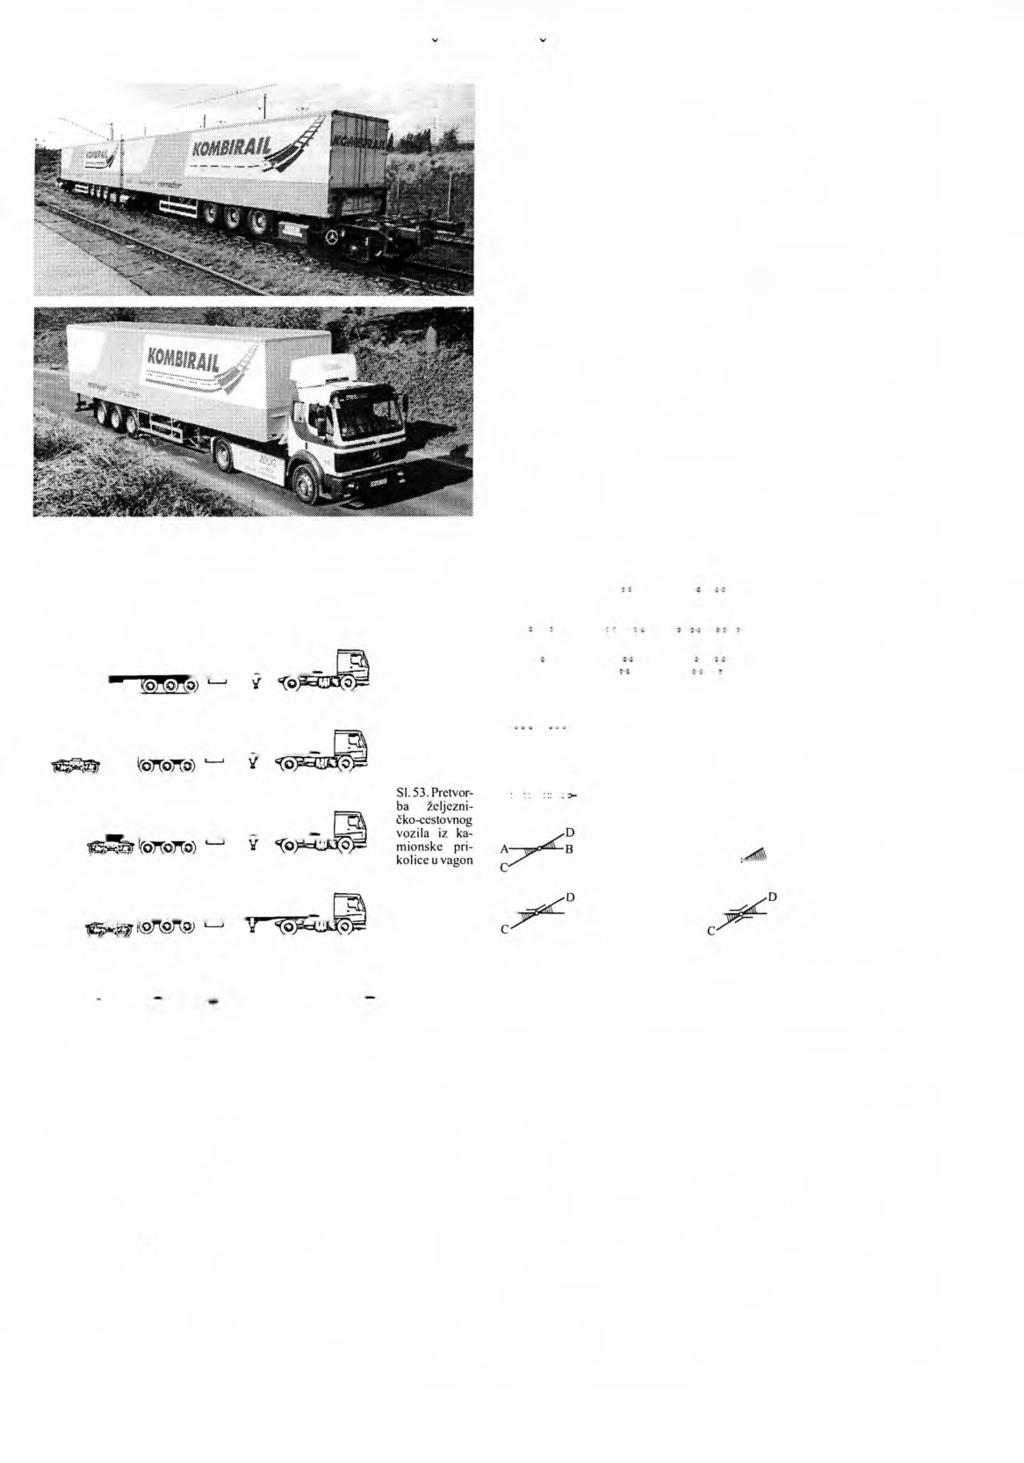 ŽELJEZNICA - ŽELJEZNIČKI KOLODVOR 673 SI. 52. Vozilo bimodalnog prijevoza Takvo univerzalno vozilo ima značajke i cestovnog i željezničkog vozila (si. 52).